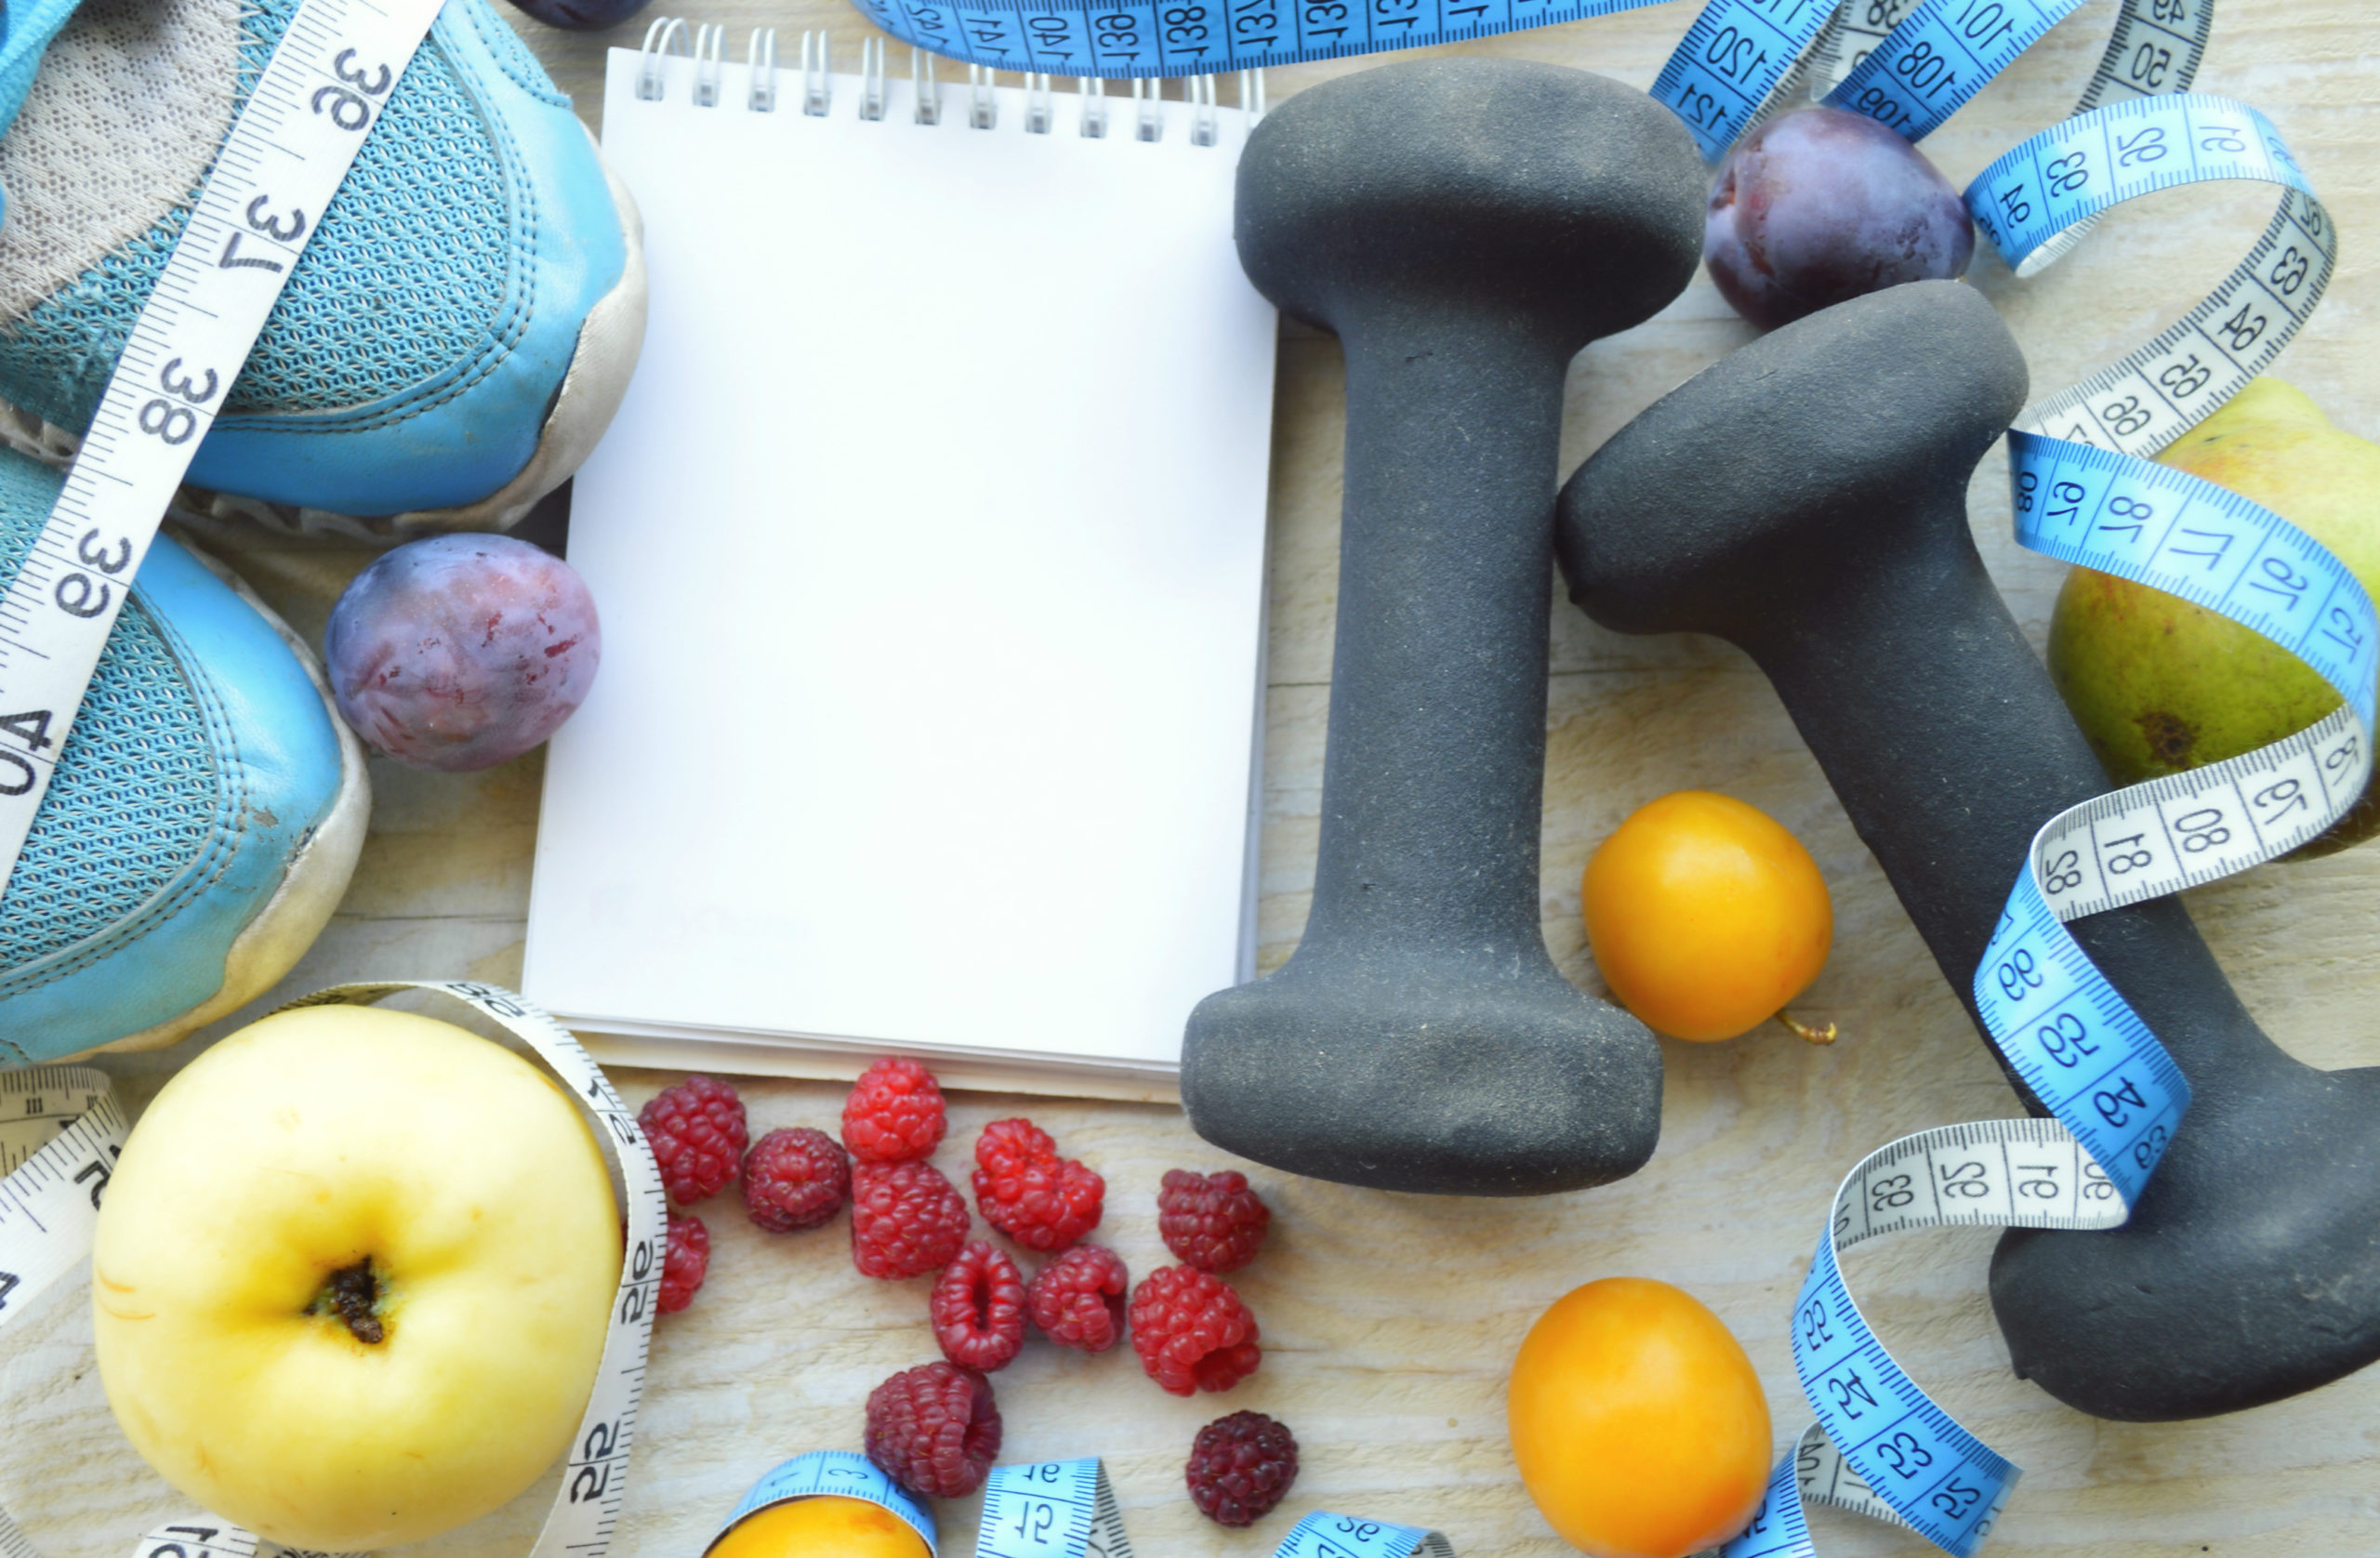 ضرورة احتواء الوجبات الغذائية بعد التمارين على الكربوهيدرات الصحية والبروتينات